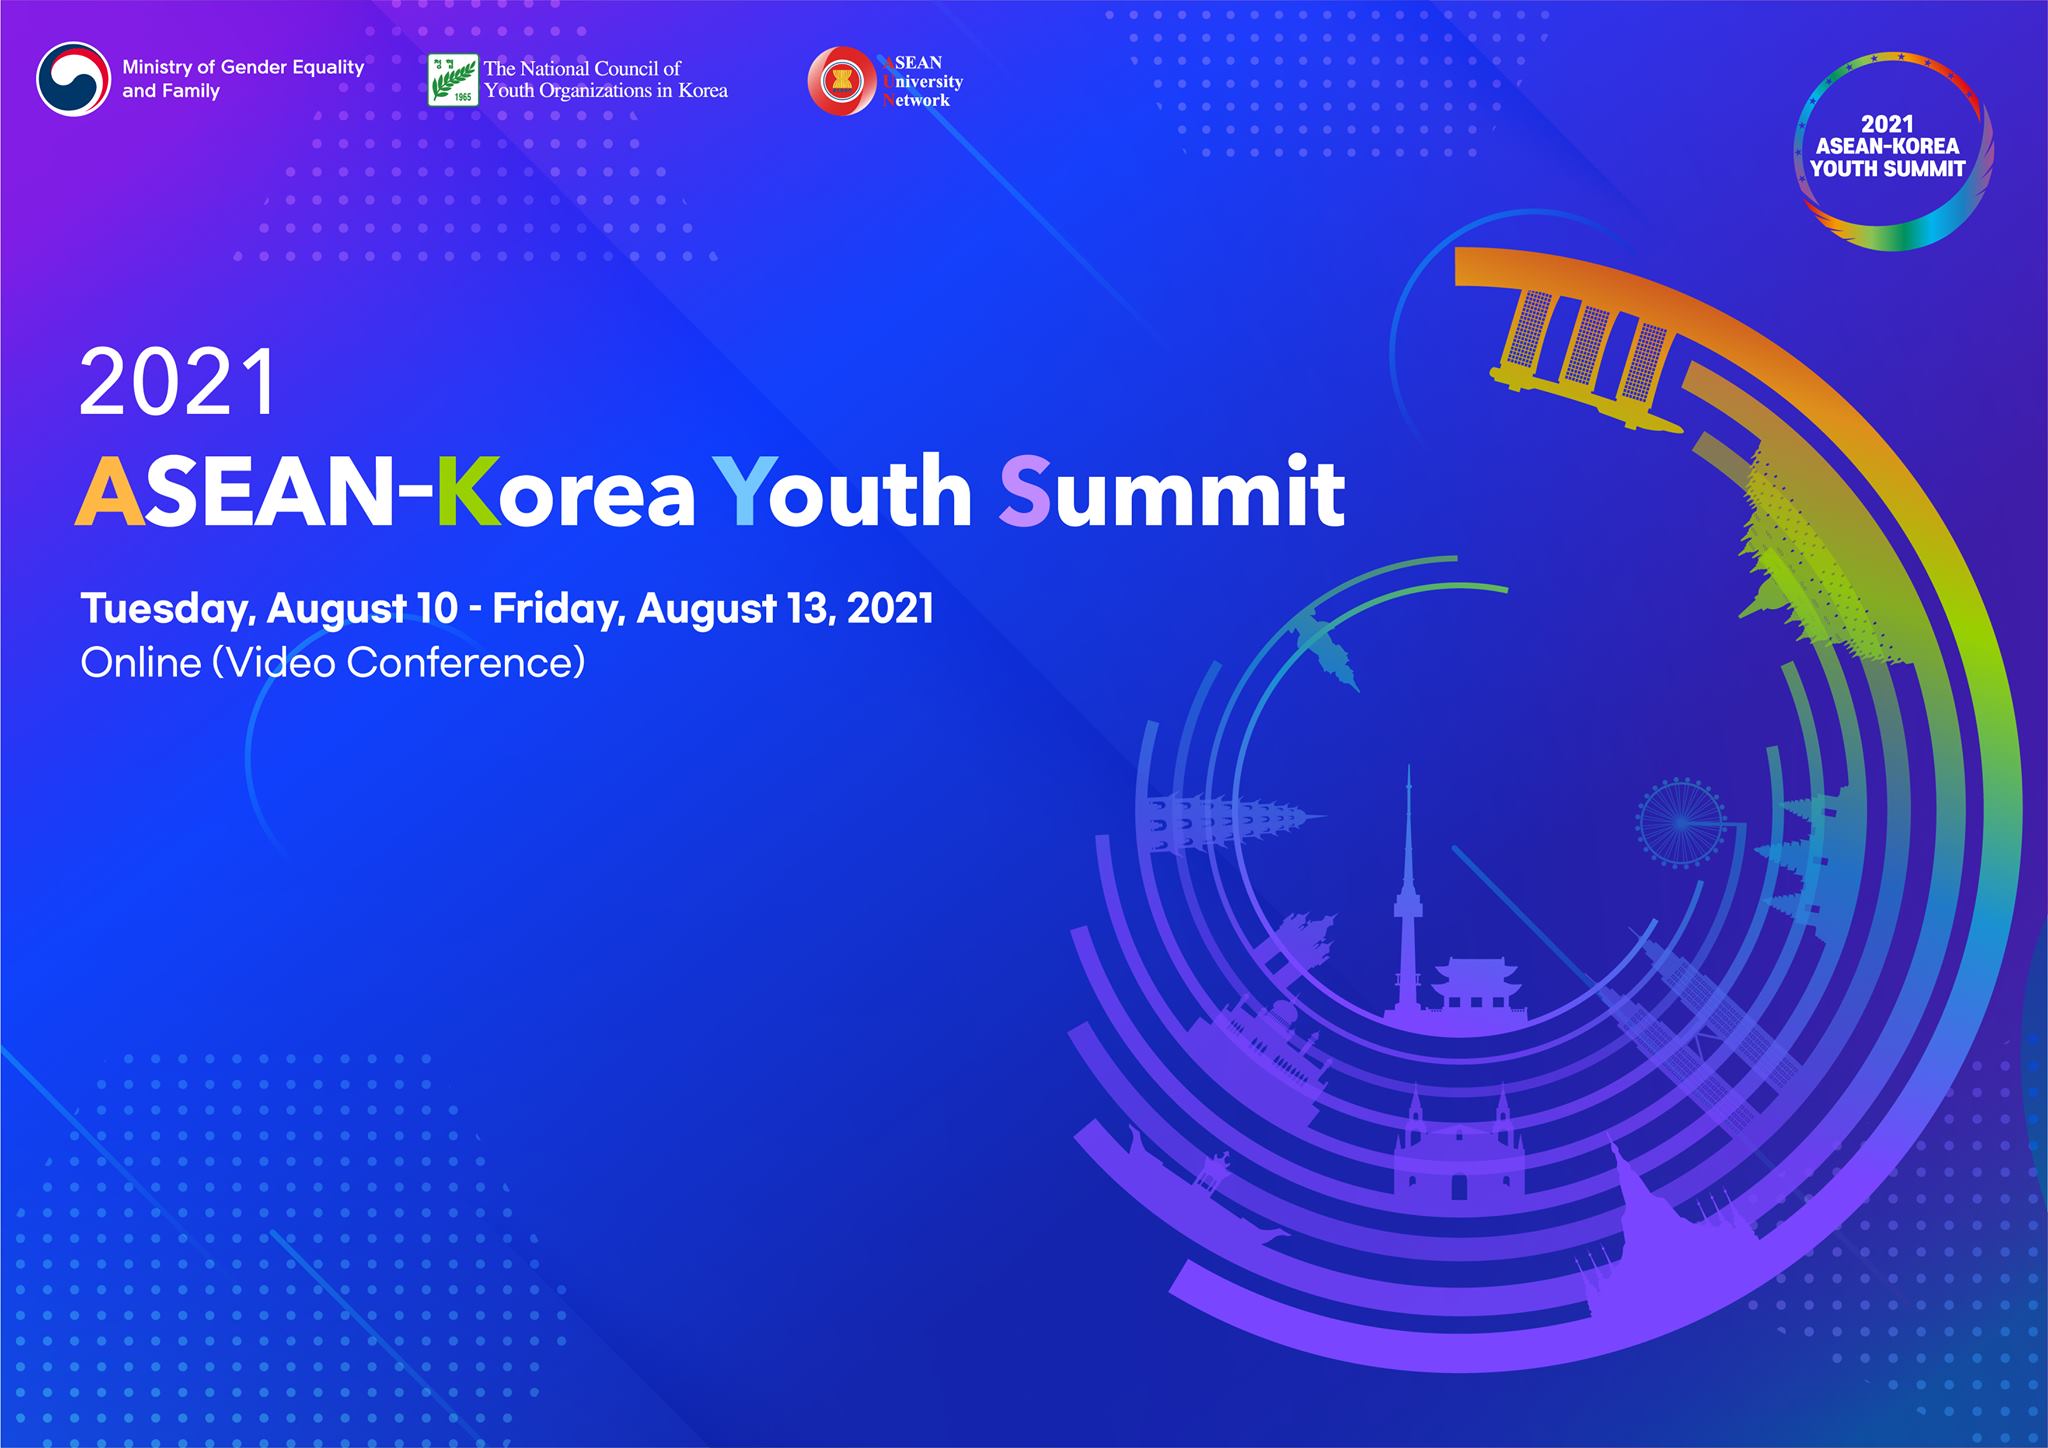 Giới thiệu sinh viên đăng ký tham dự Chương trình ASEAN-Korea Youth Summit 2021